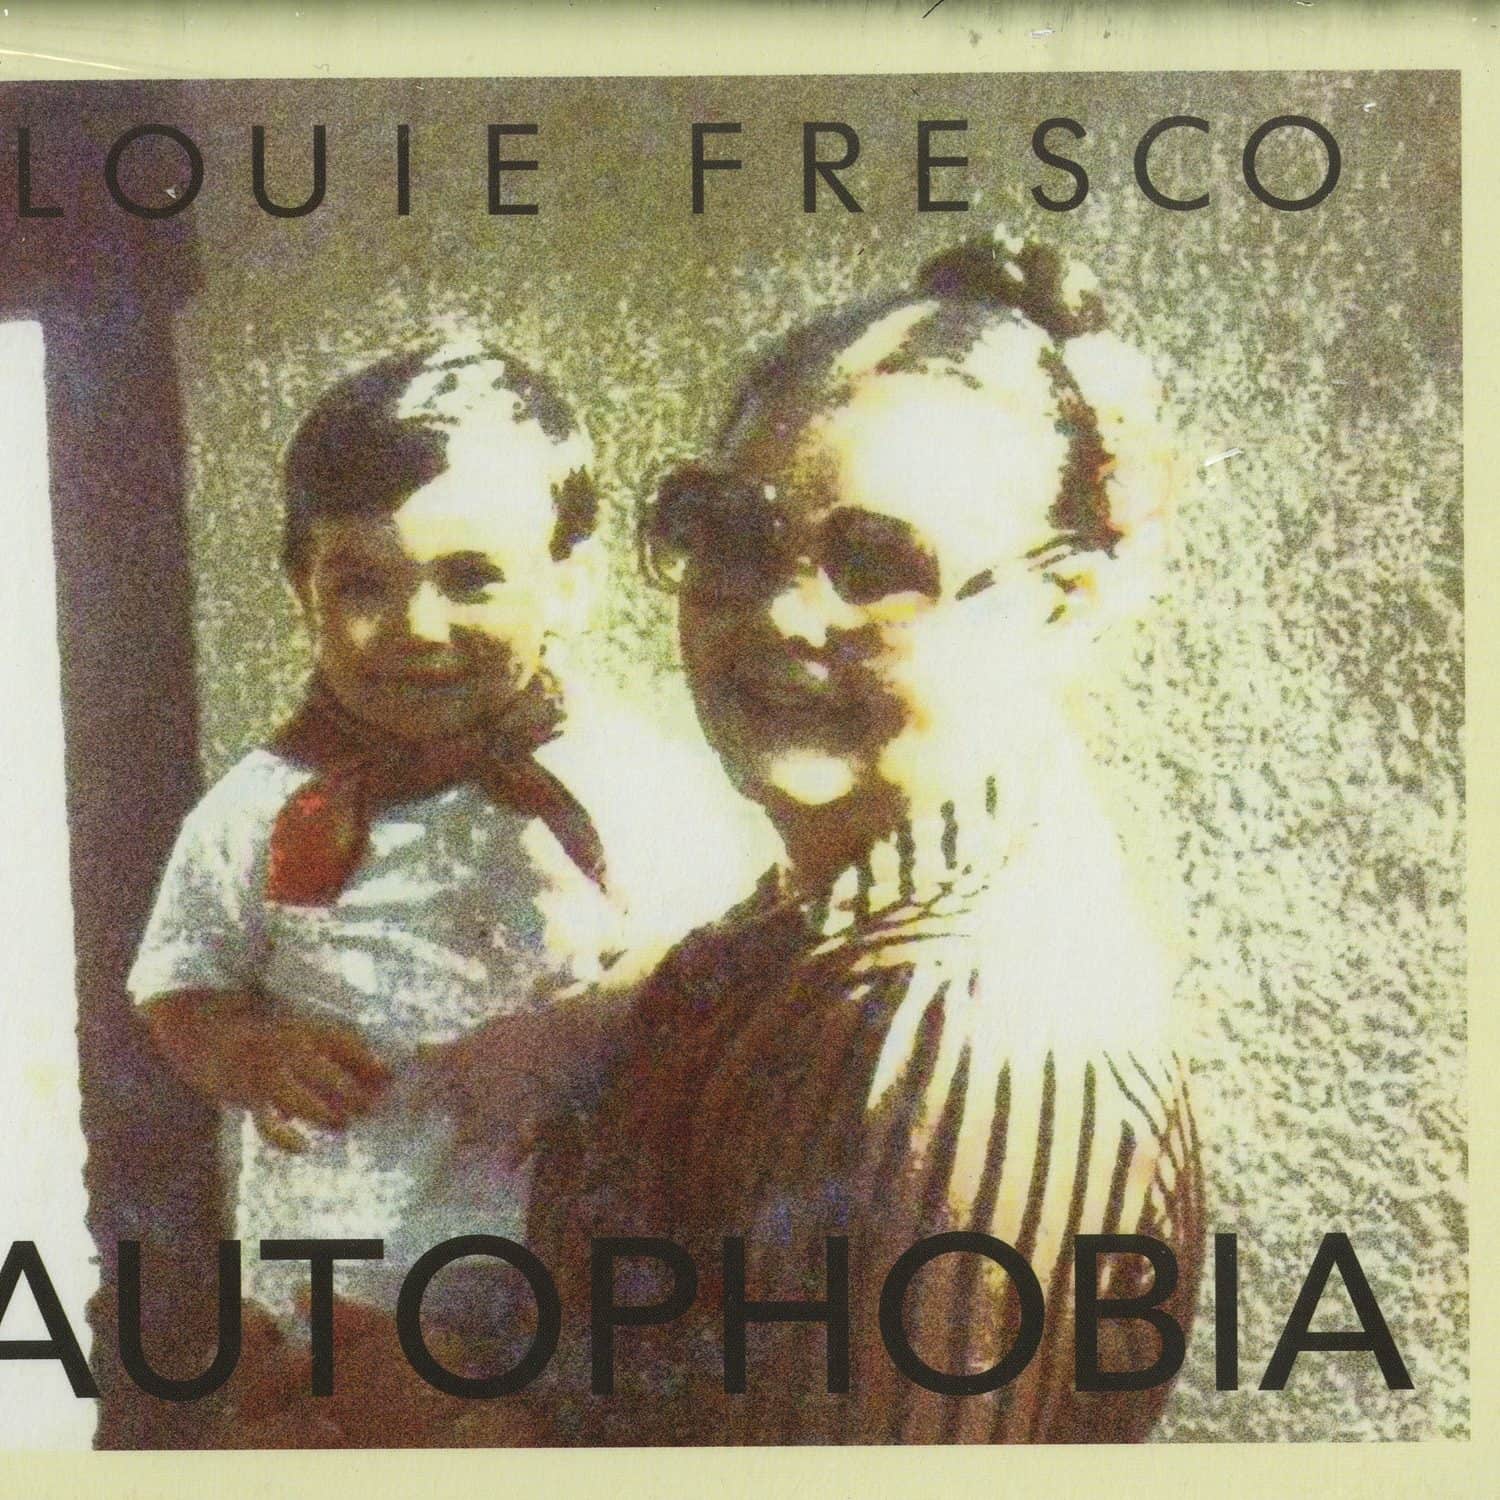 Louie Fresco - AUTOPHIBIA 